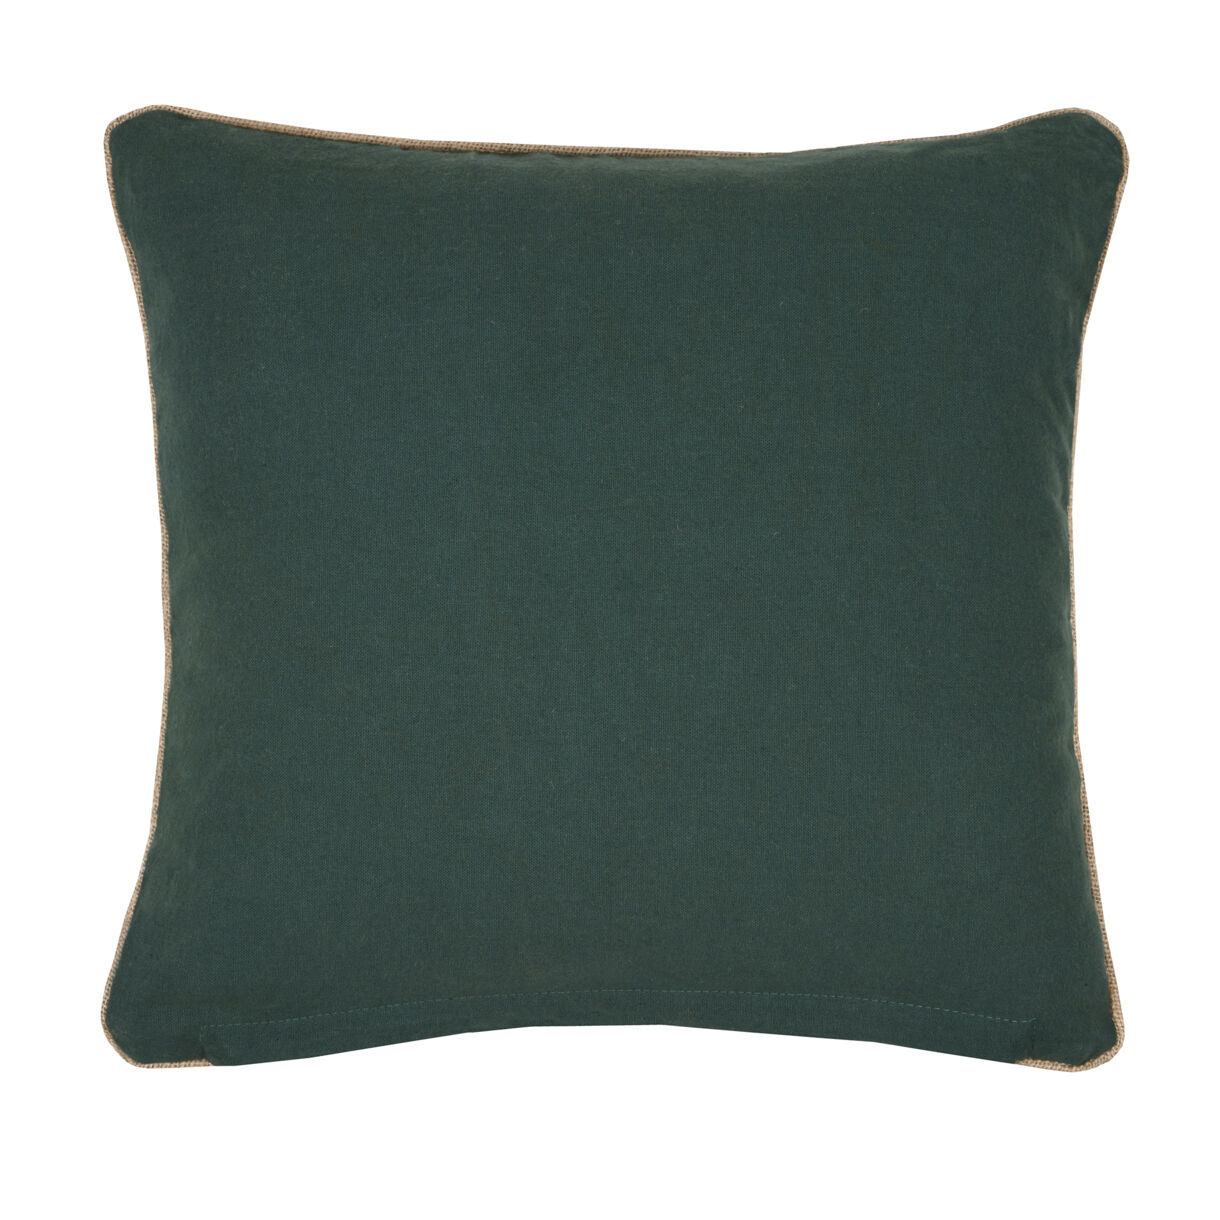 Cojín cuadrado en algodón (45 x 45 cm) Bunty Verde esmeralda